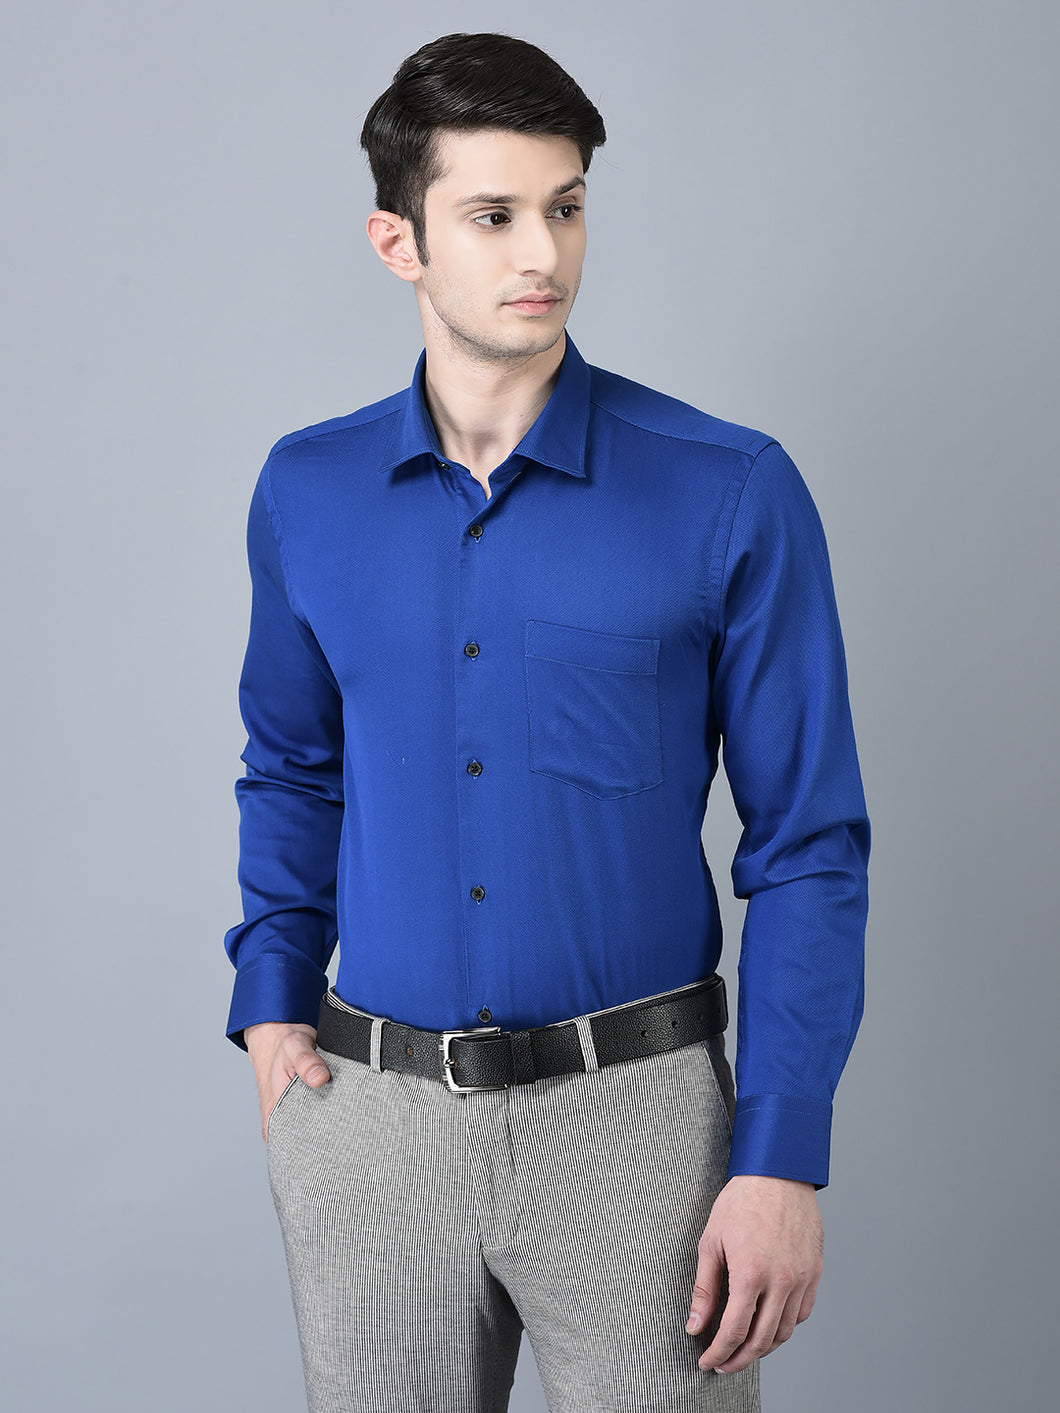 CANOE MEN Formal Shirt ELECTEIC BLUE Color Cotton Fabric Button Closure